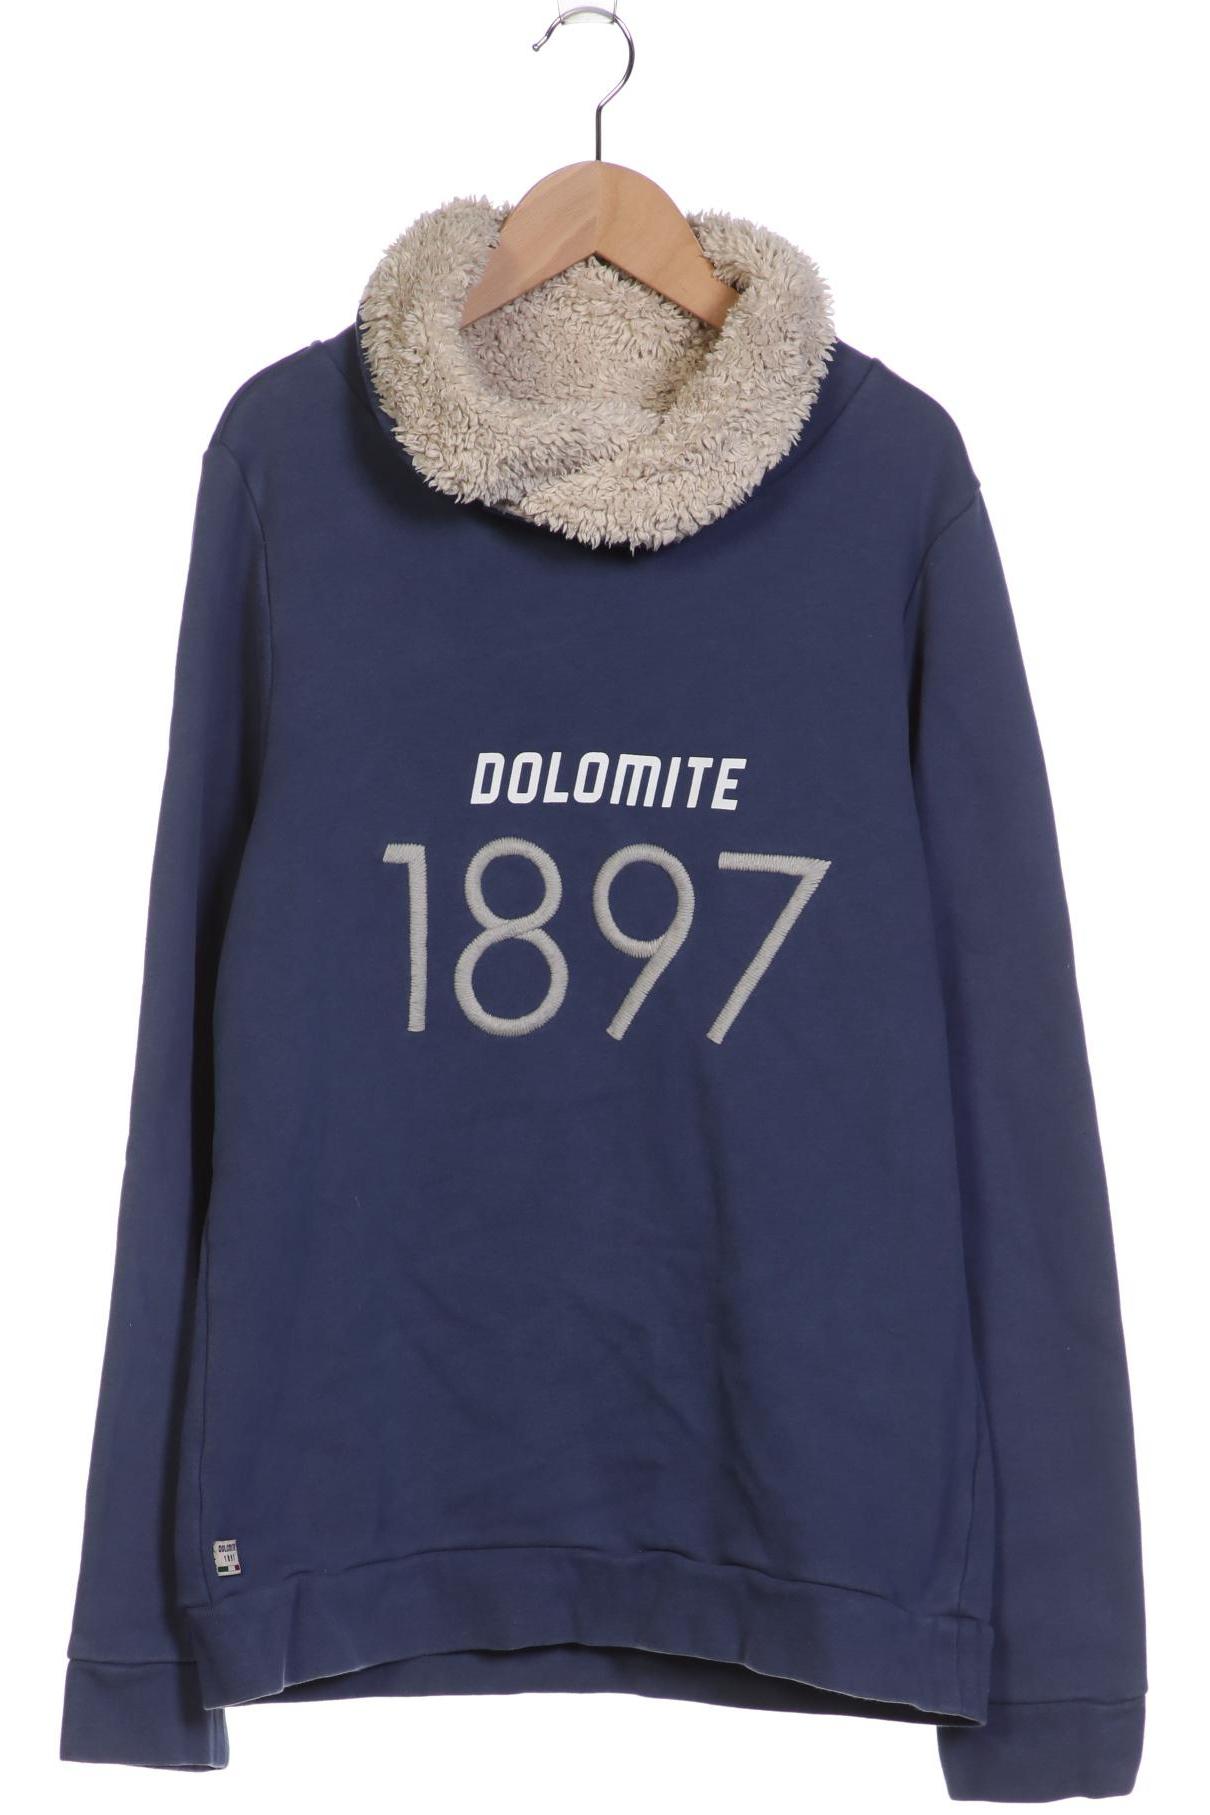 Dolomite Damen Sweatshirt, marineblau von Dolomite